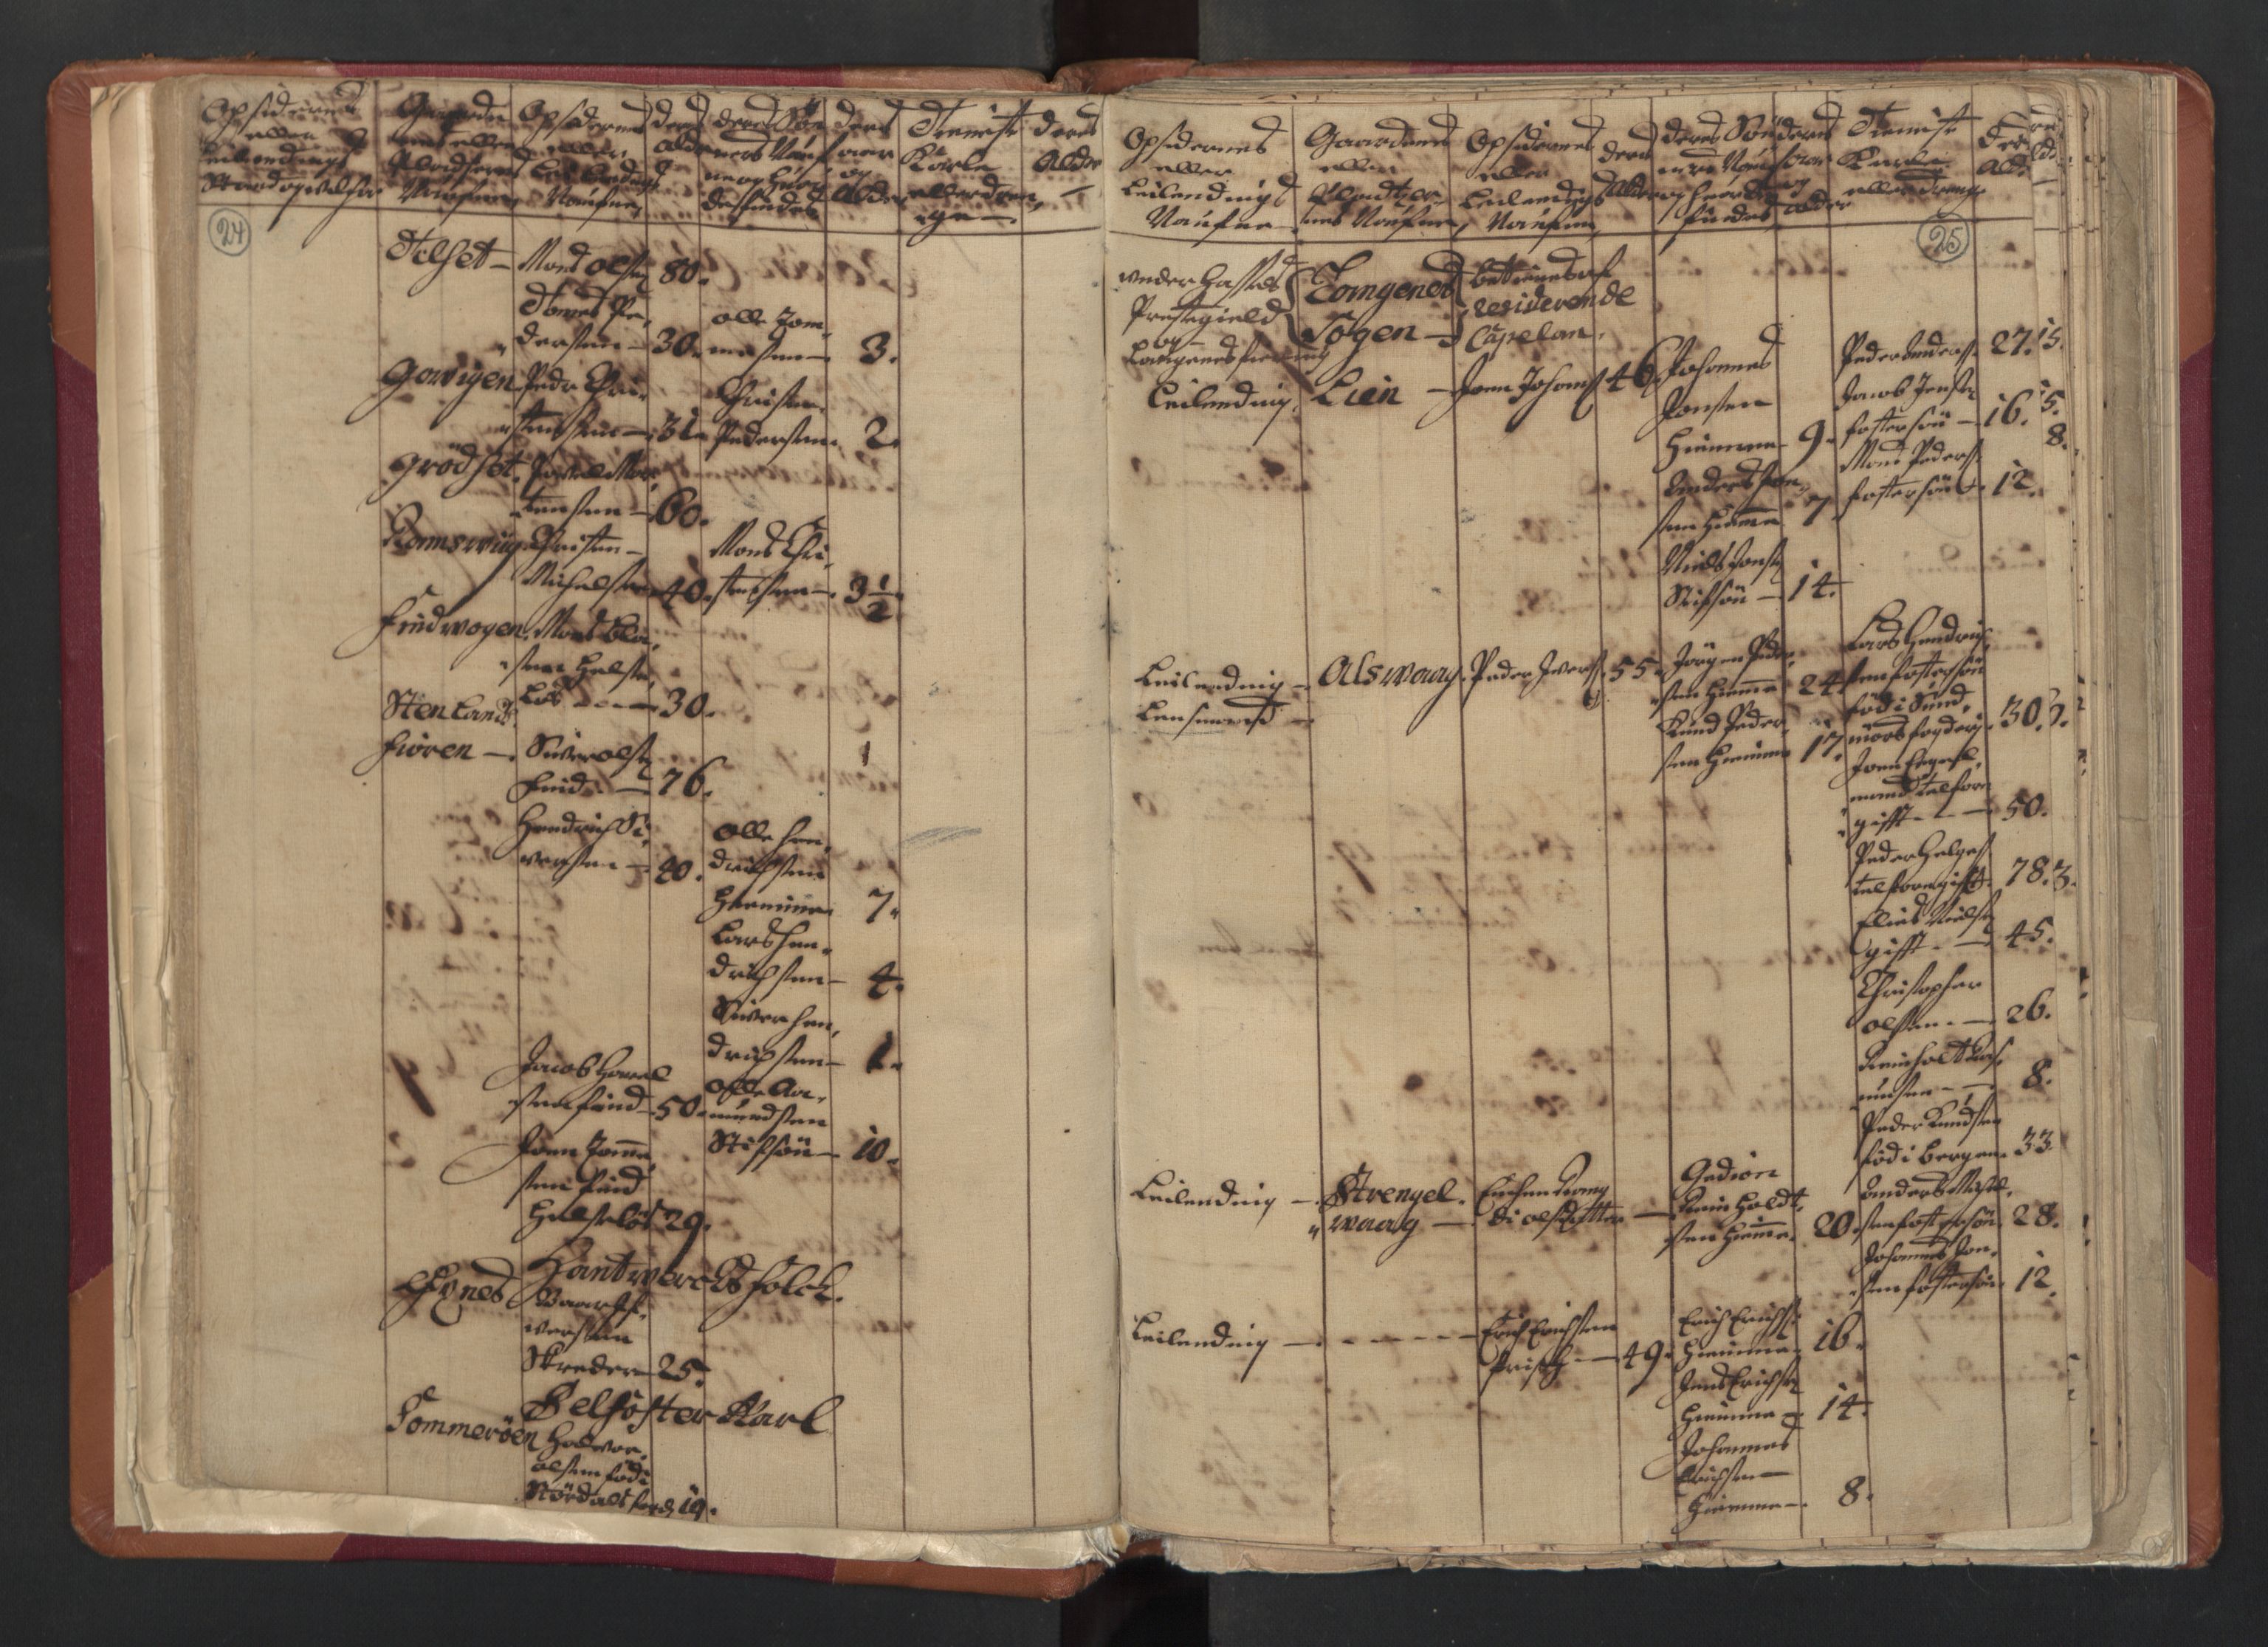 RA, Census (manntall) 1701, no. 18: Vesterålen, Andenes and Lofoten fogderi, 1701, p. 24-25